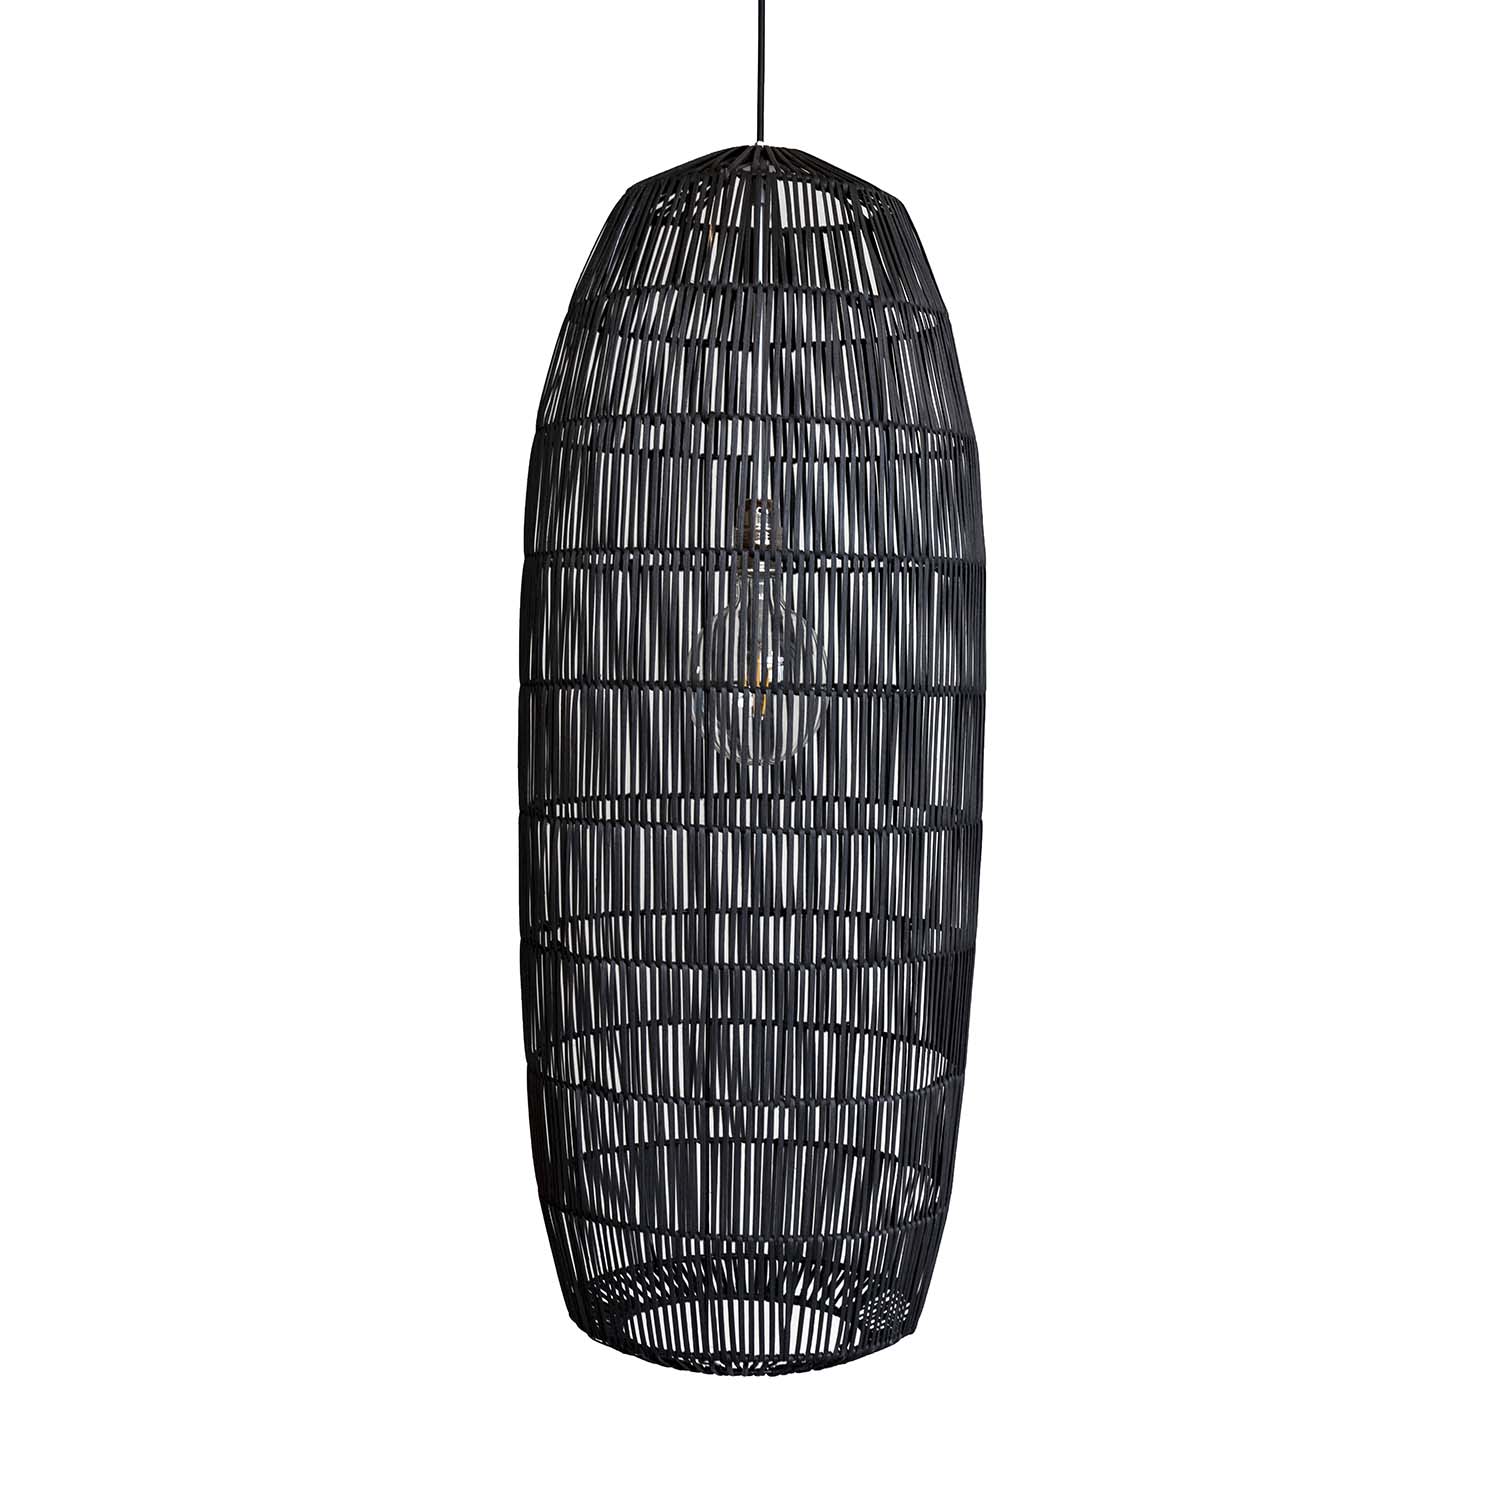 PICKLE - Handmade natural or black rattan tube pendant light